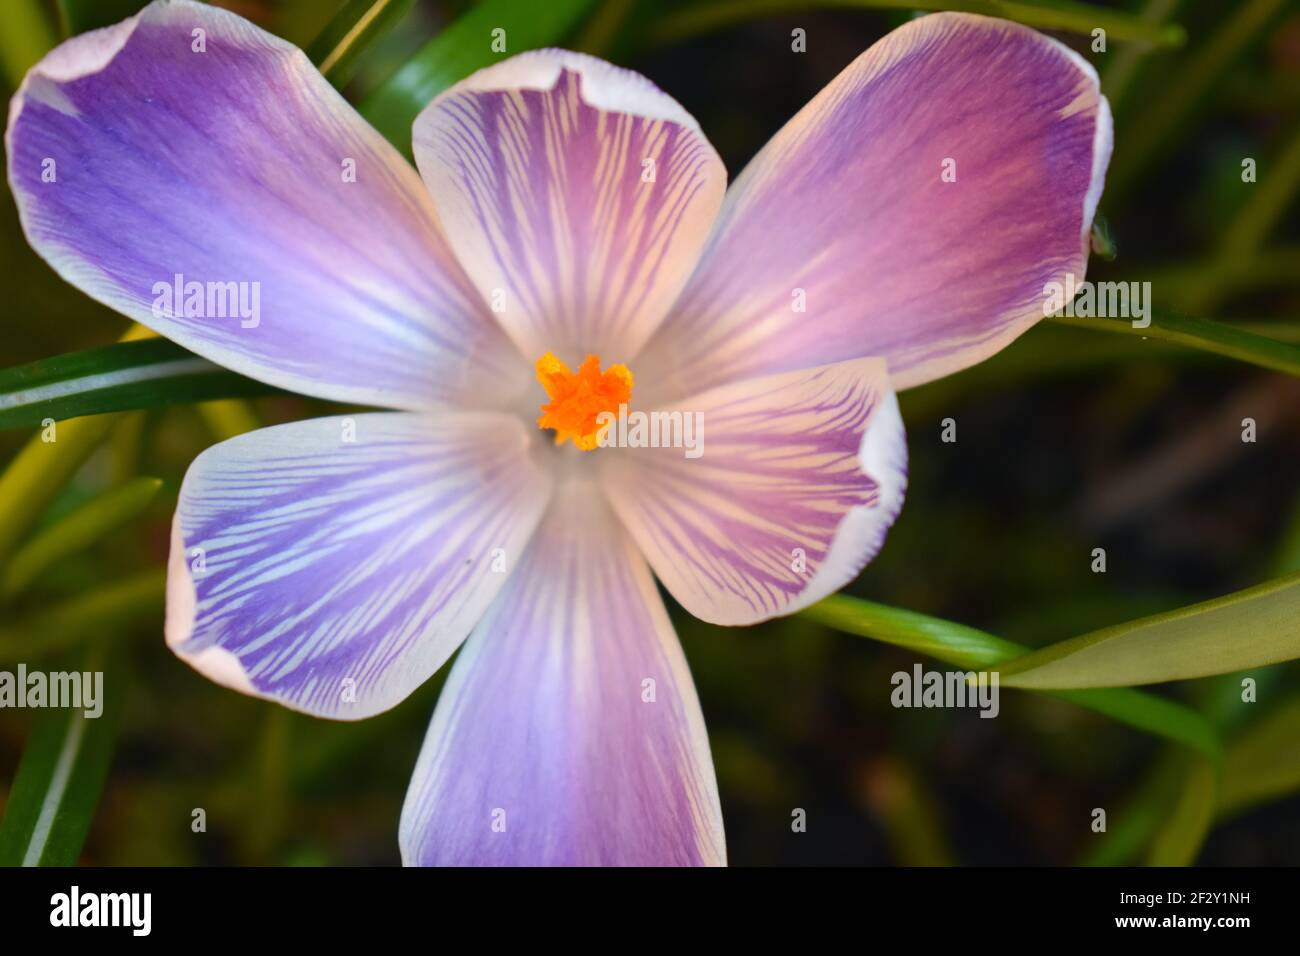 Un crocus hollandais a rayé blanc violet fleurs formant grand Bols et pétales avec des bords à franges claires il est plus résistant à être mangé par les écureuils Banque D'Images